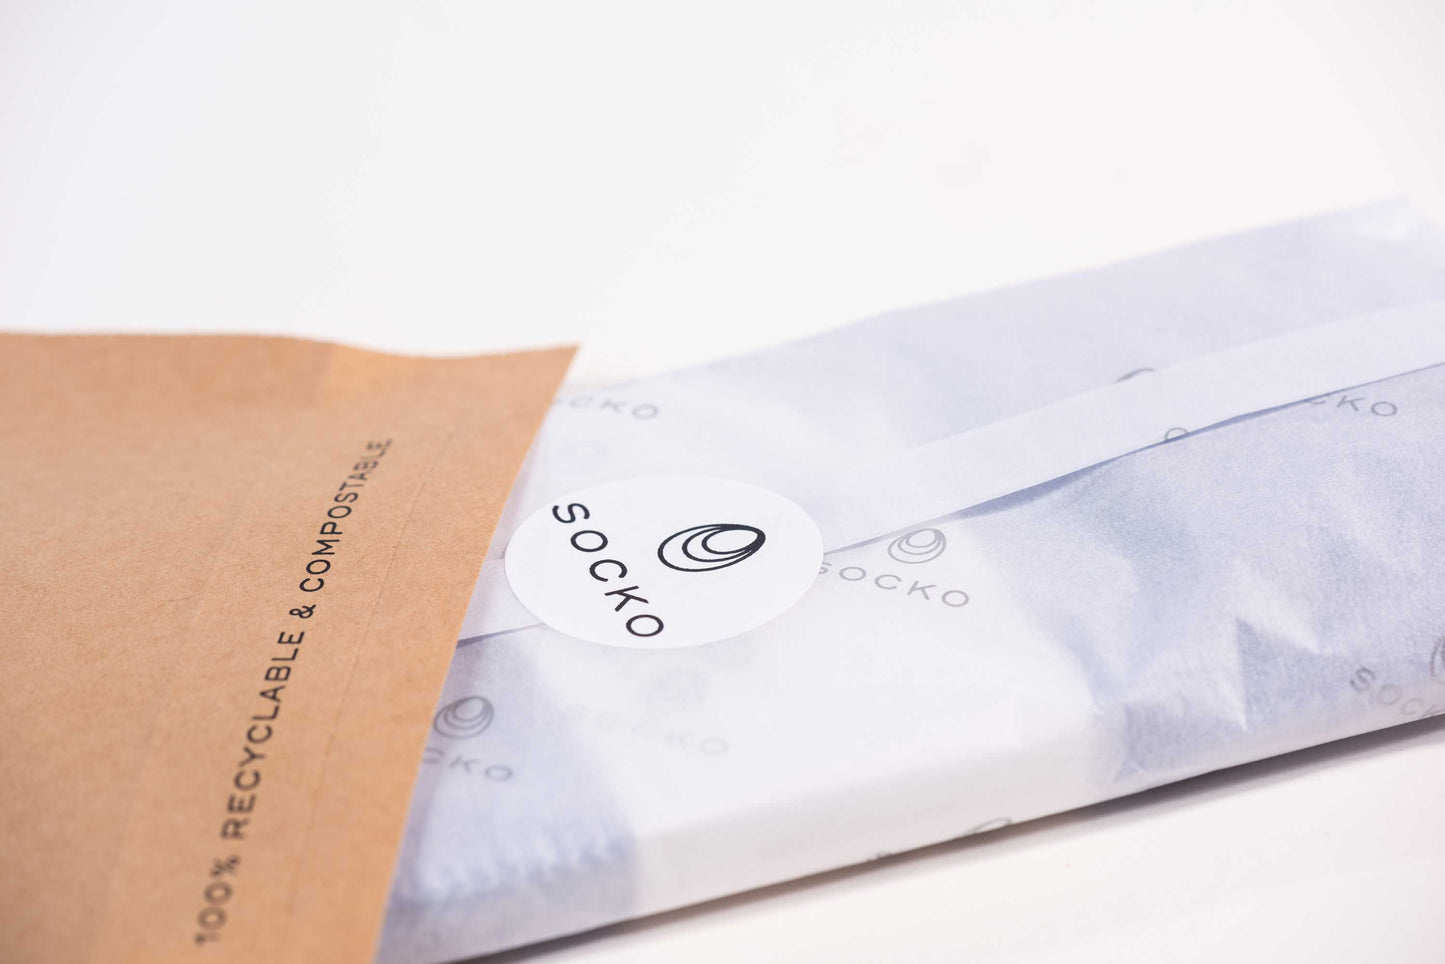 Single pair of Socko socks wrapped in plastic free packaging